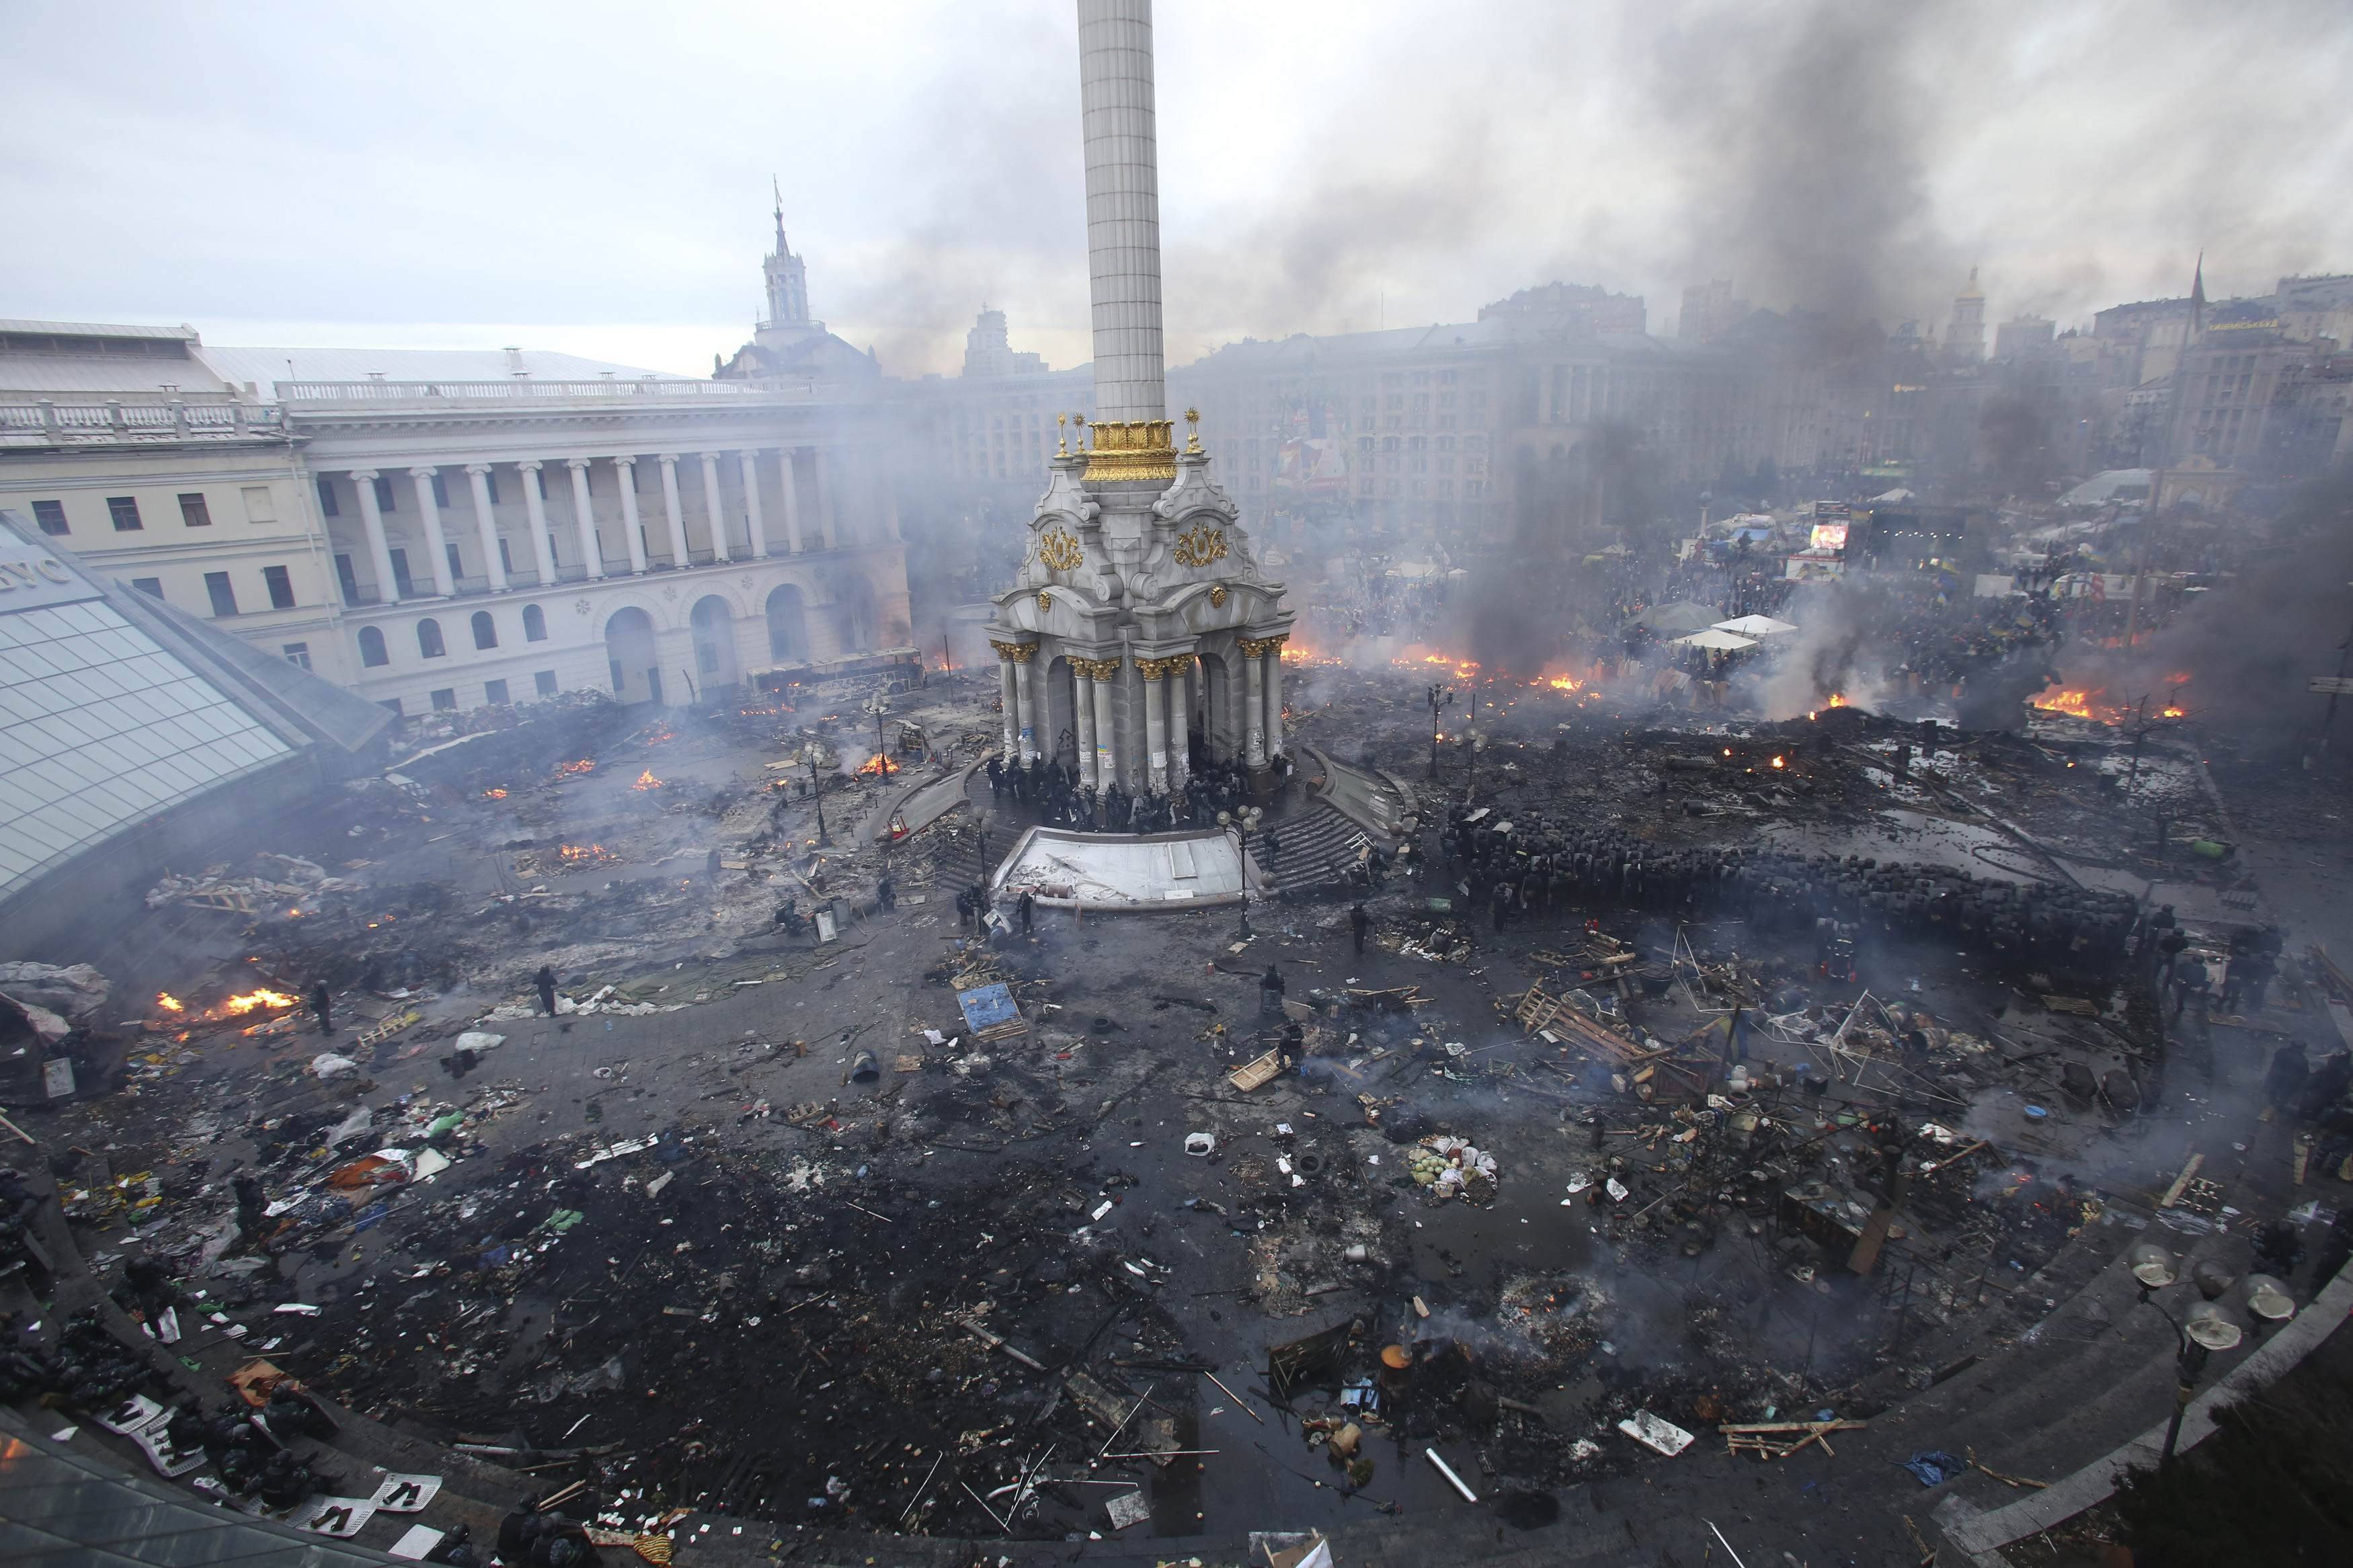 Kiev Revolution #20